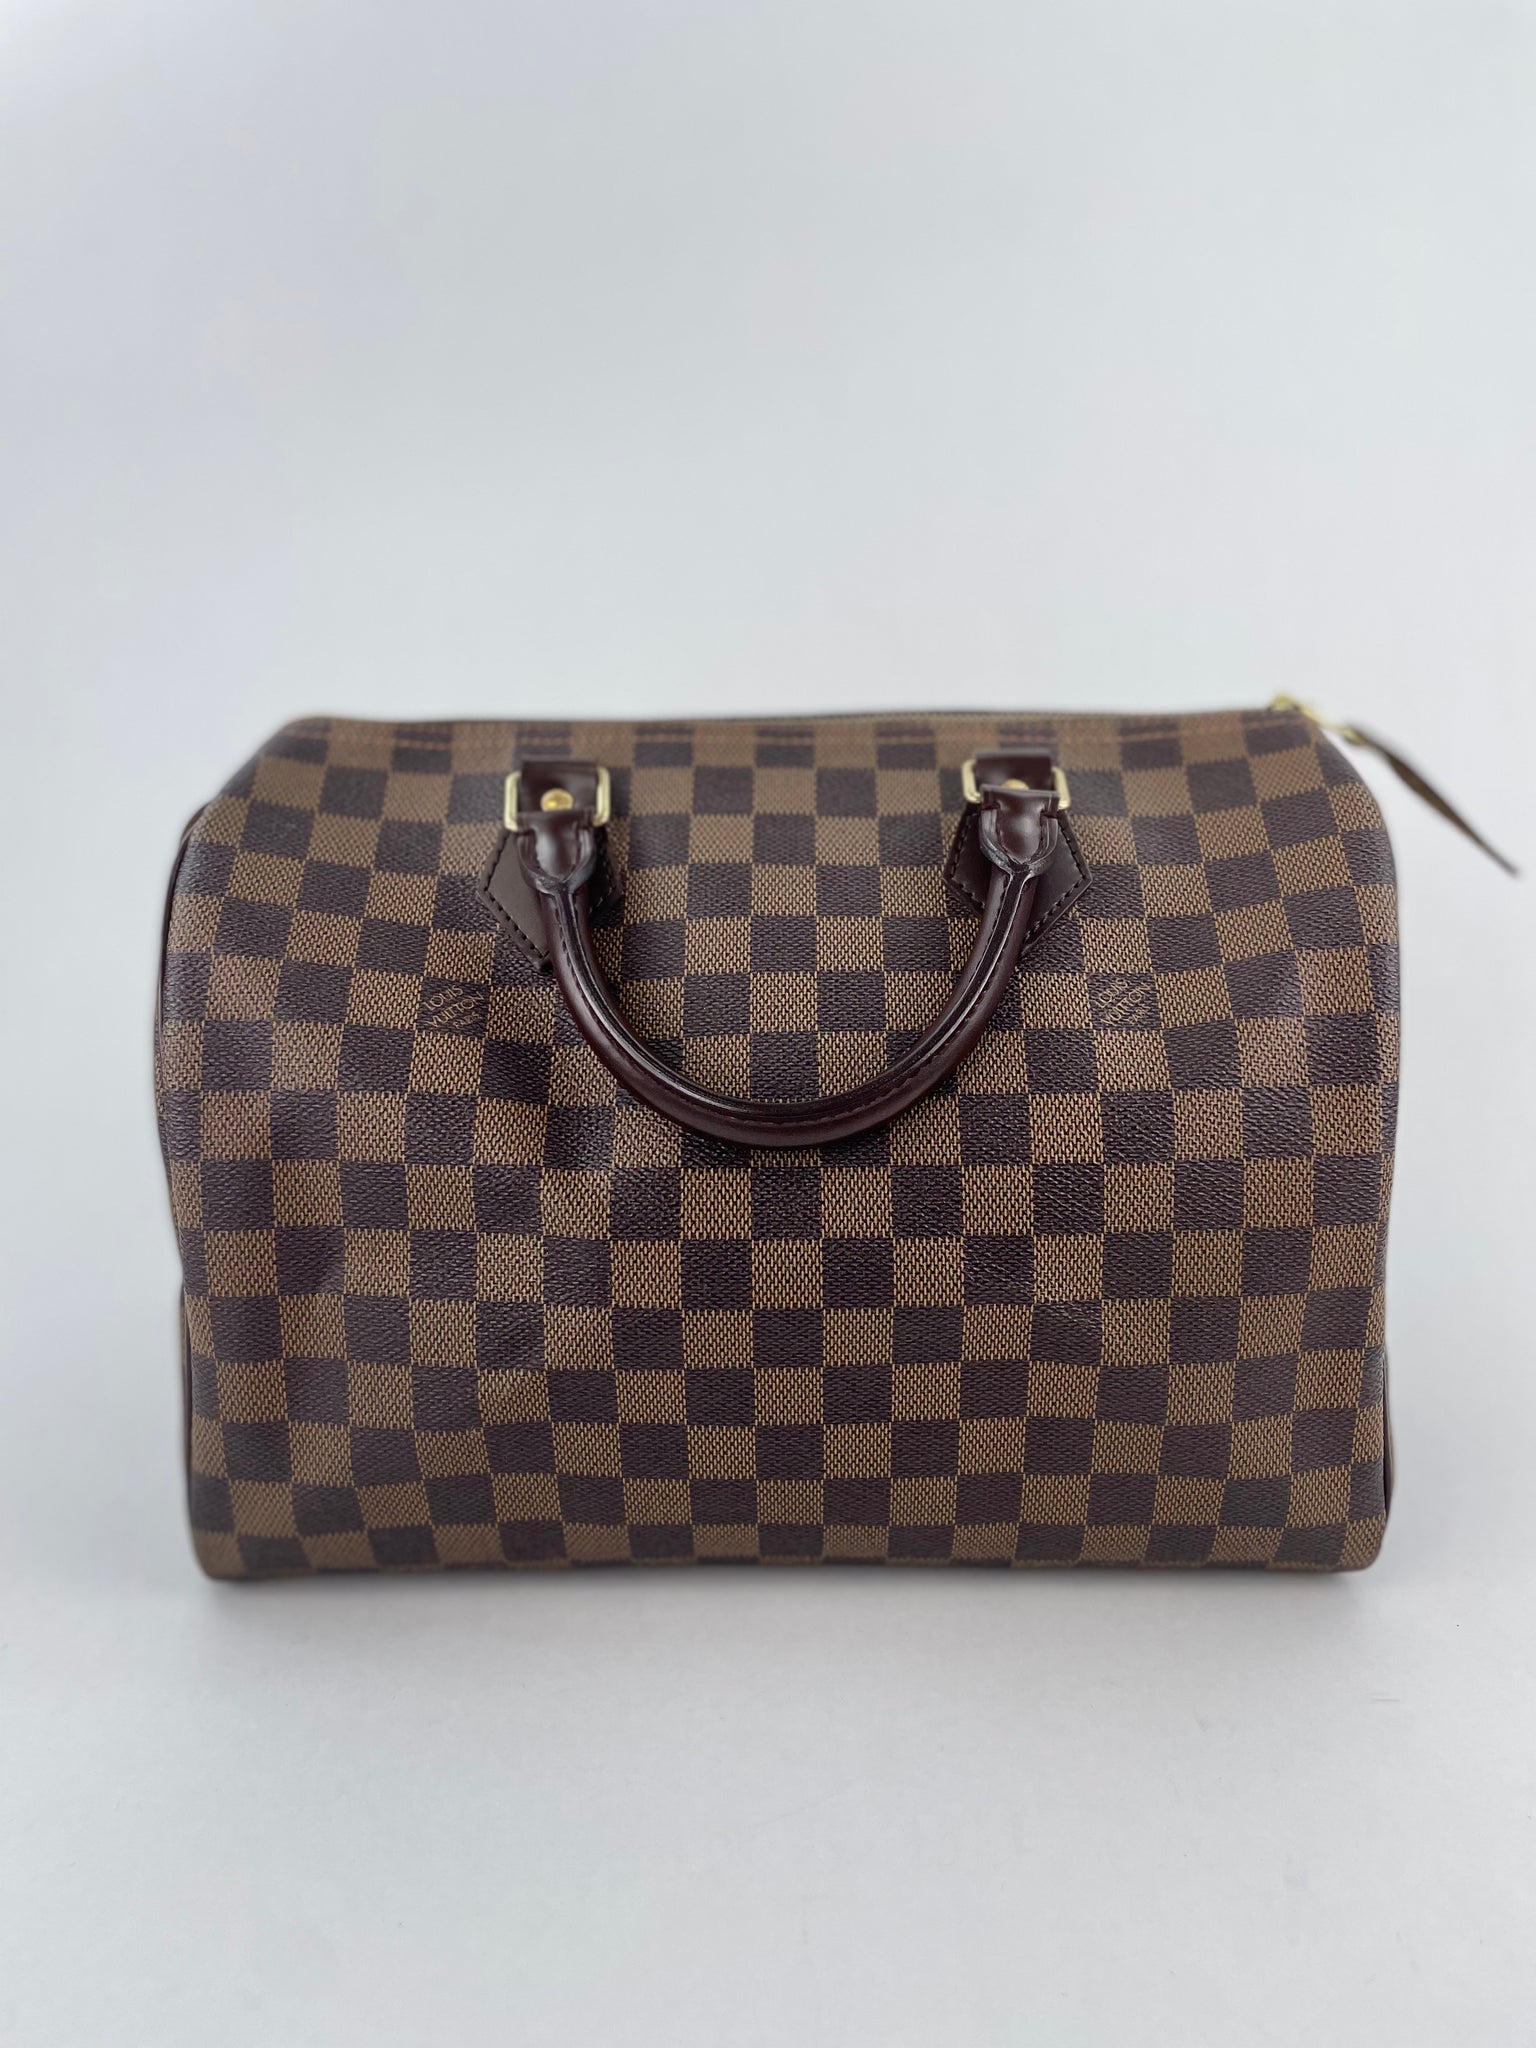 PRELOVED Louis Vuitton Damier Ebene Speedy 30 Bag SP0016 080123 $100 OFF